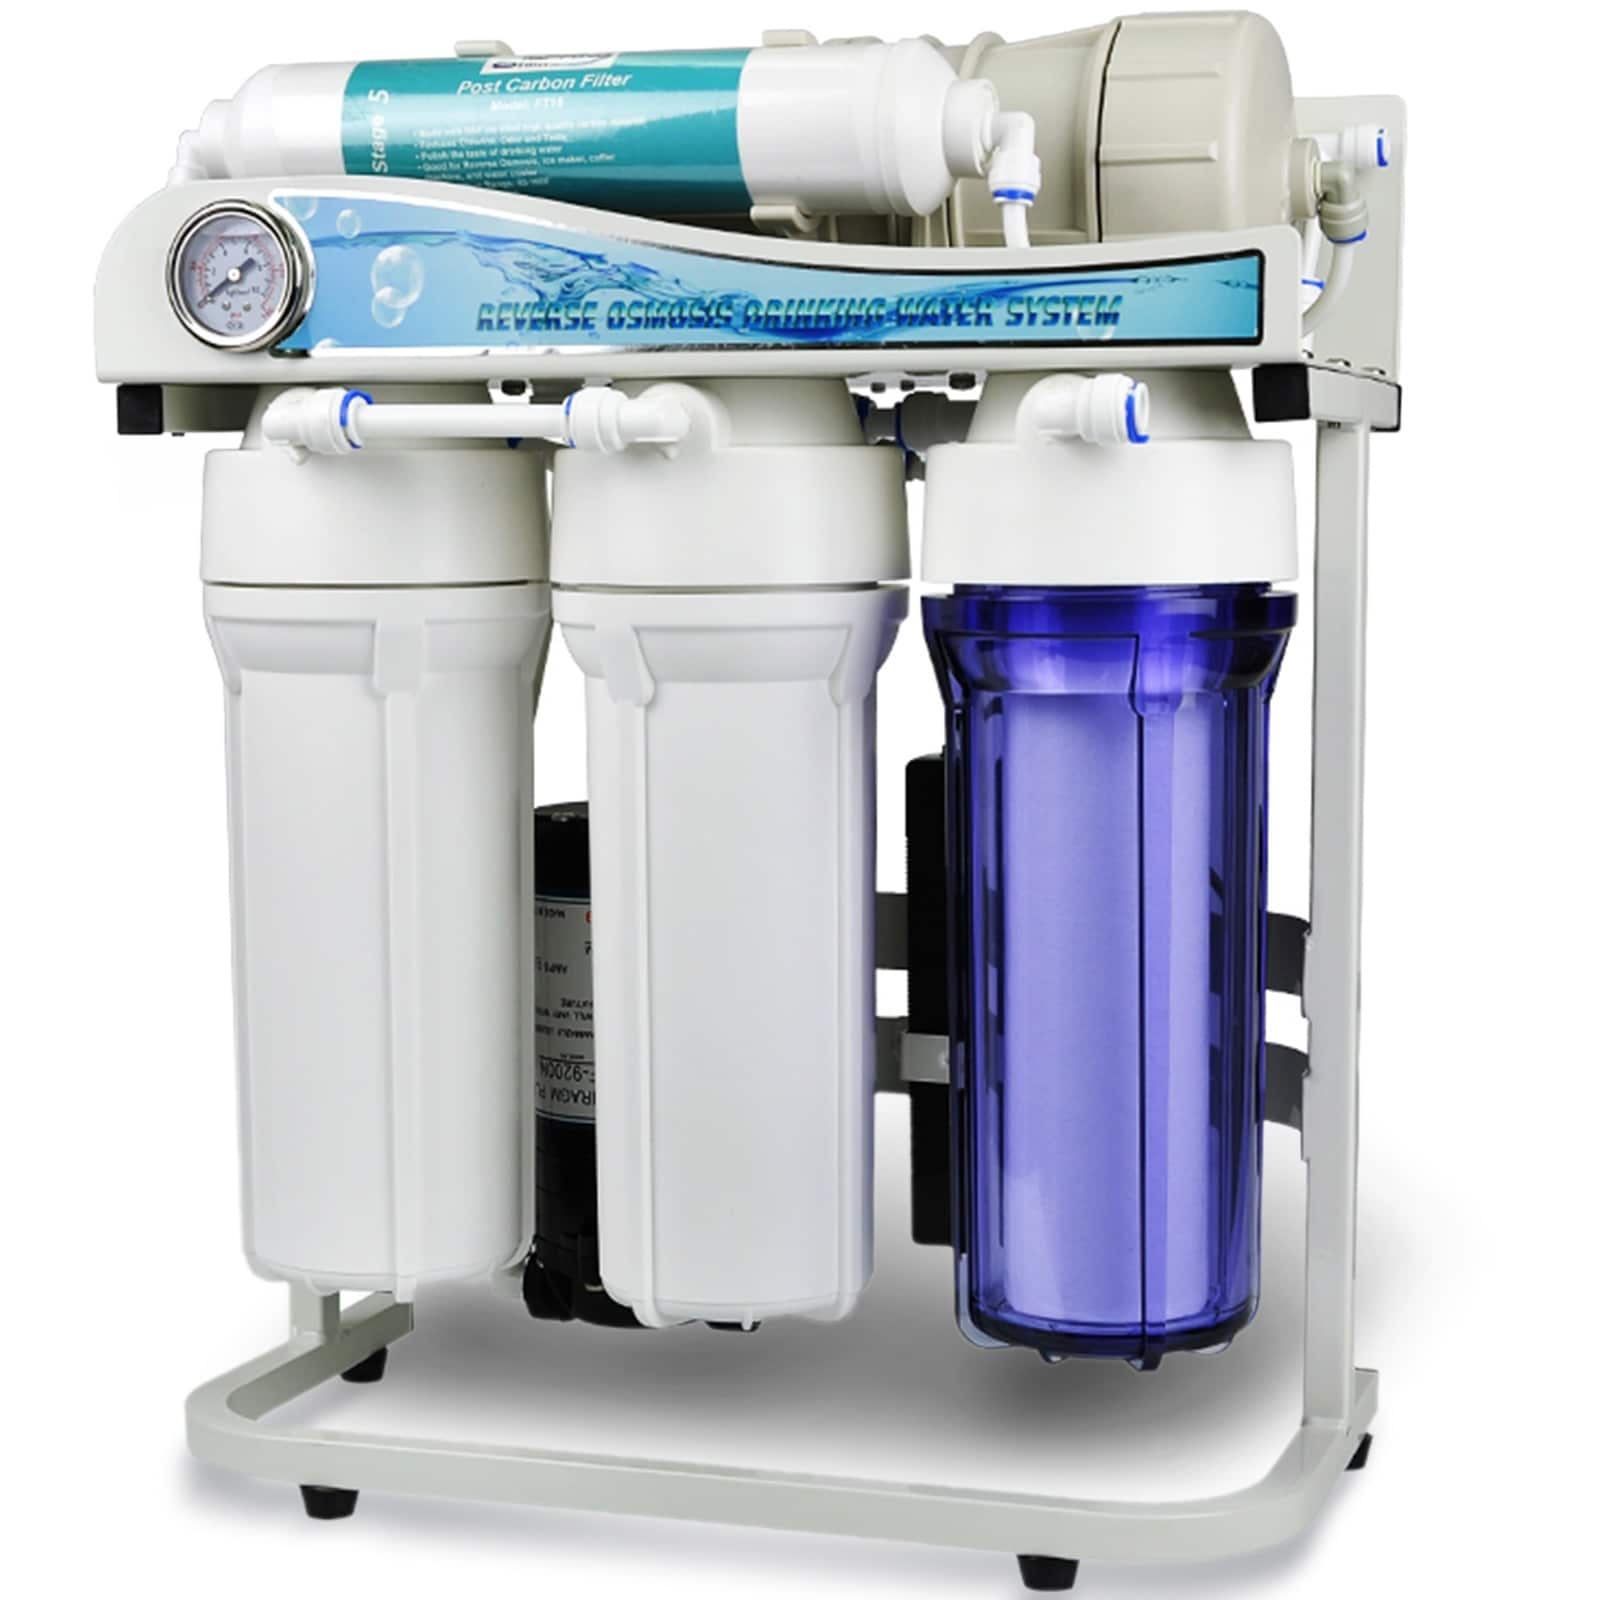 Фильтр для воды без осмоса. Фильтры Water quality Reverse Osmosis System. Ro-600 обратный осмос. Фильтр для воды Reverse Osmosis. Фильтр обратного осмоса 75.